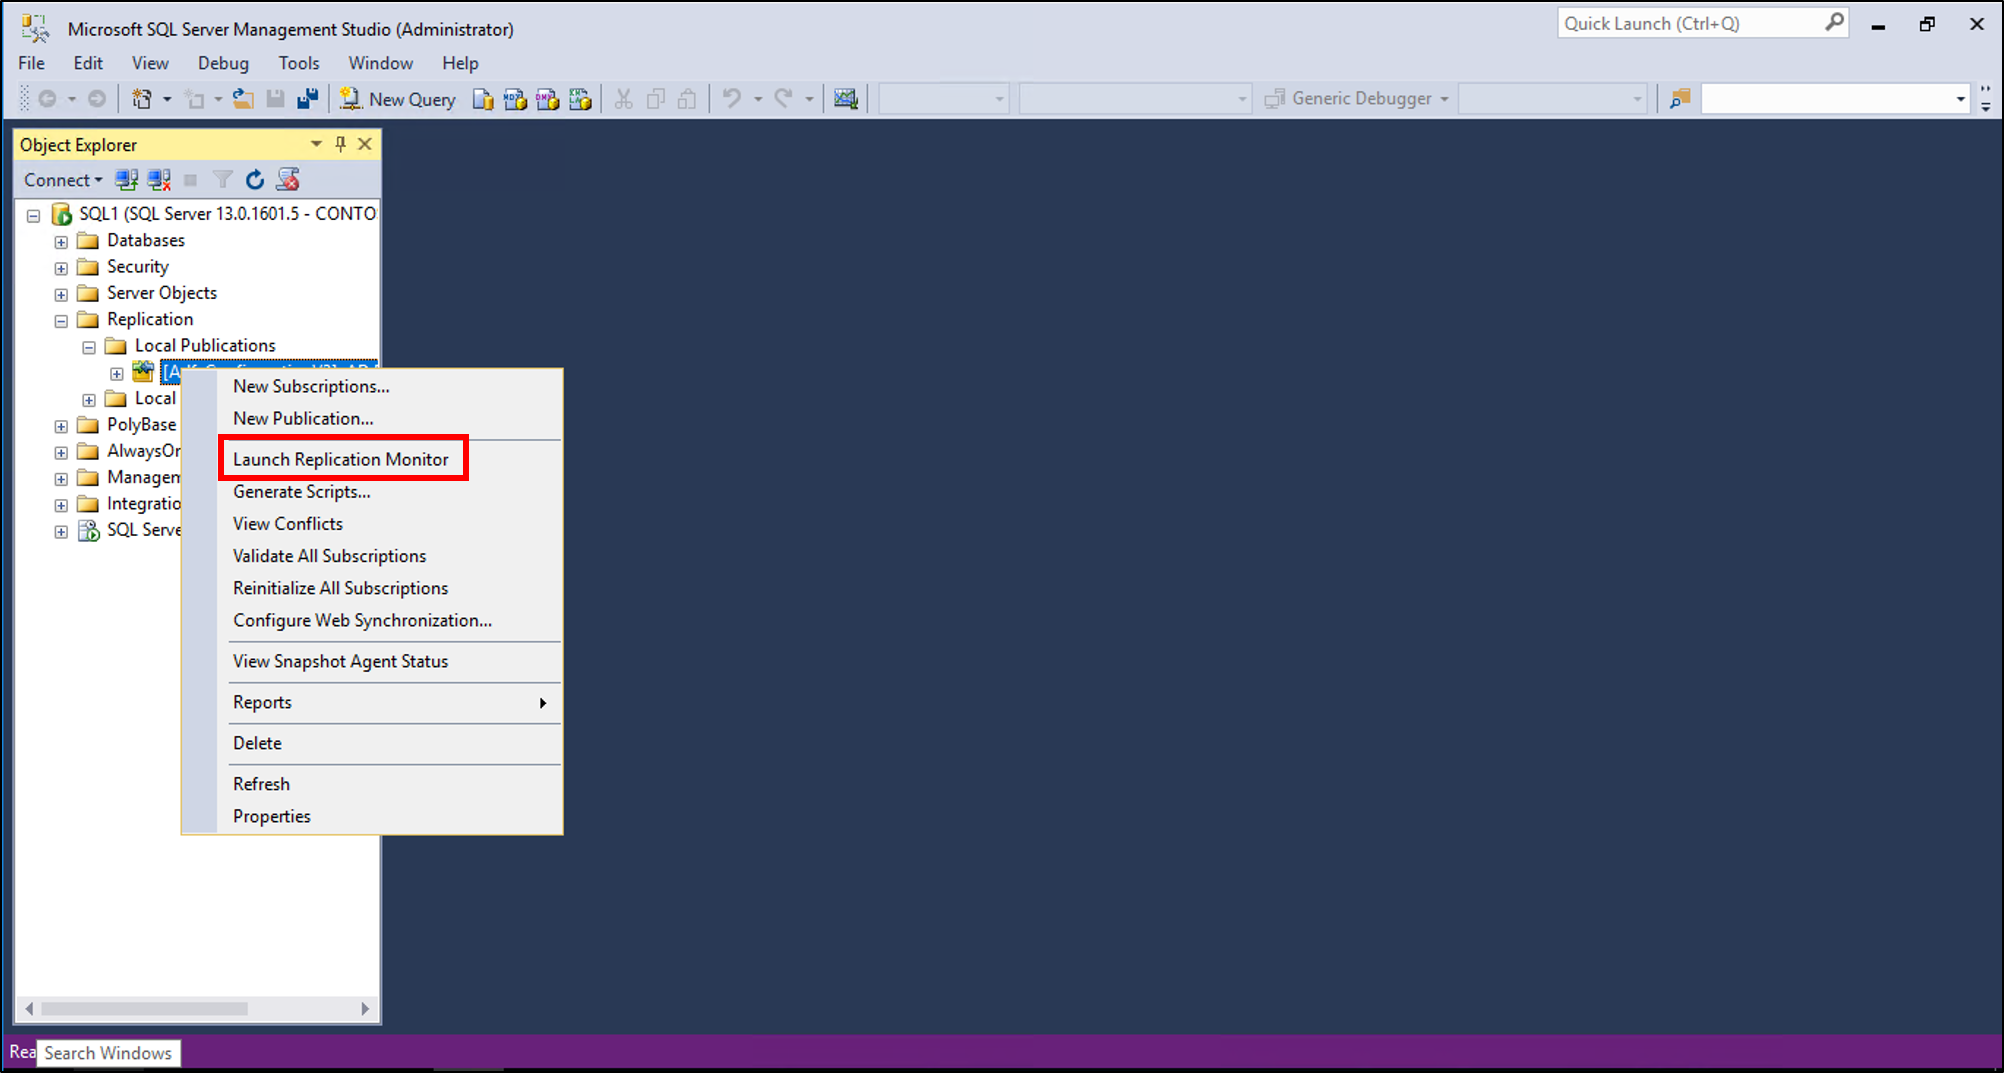 Screenshot that shows the Launch Replication Monitor menu option.